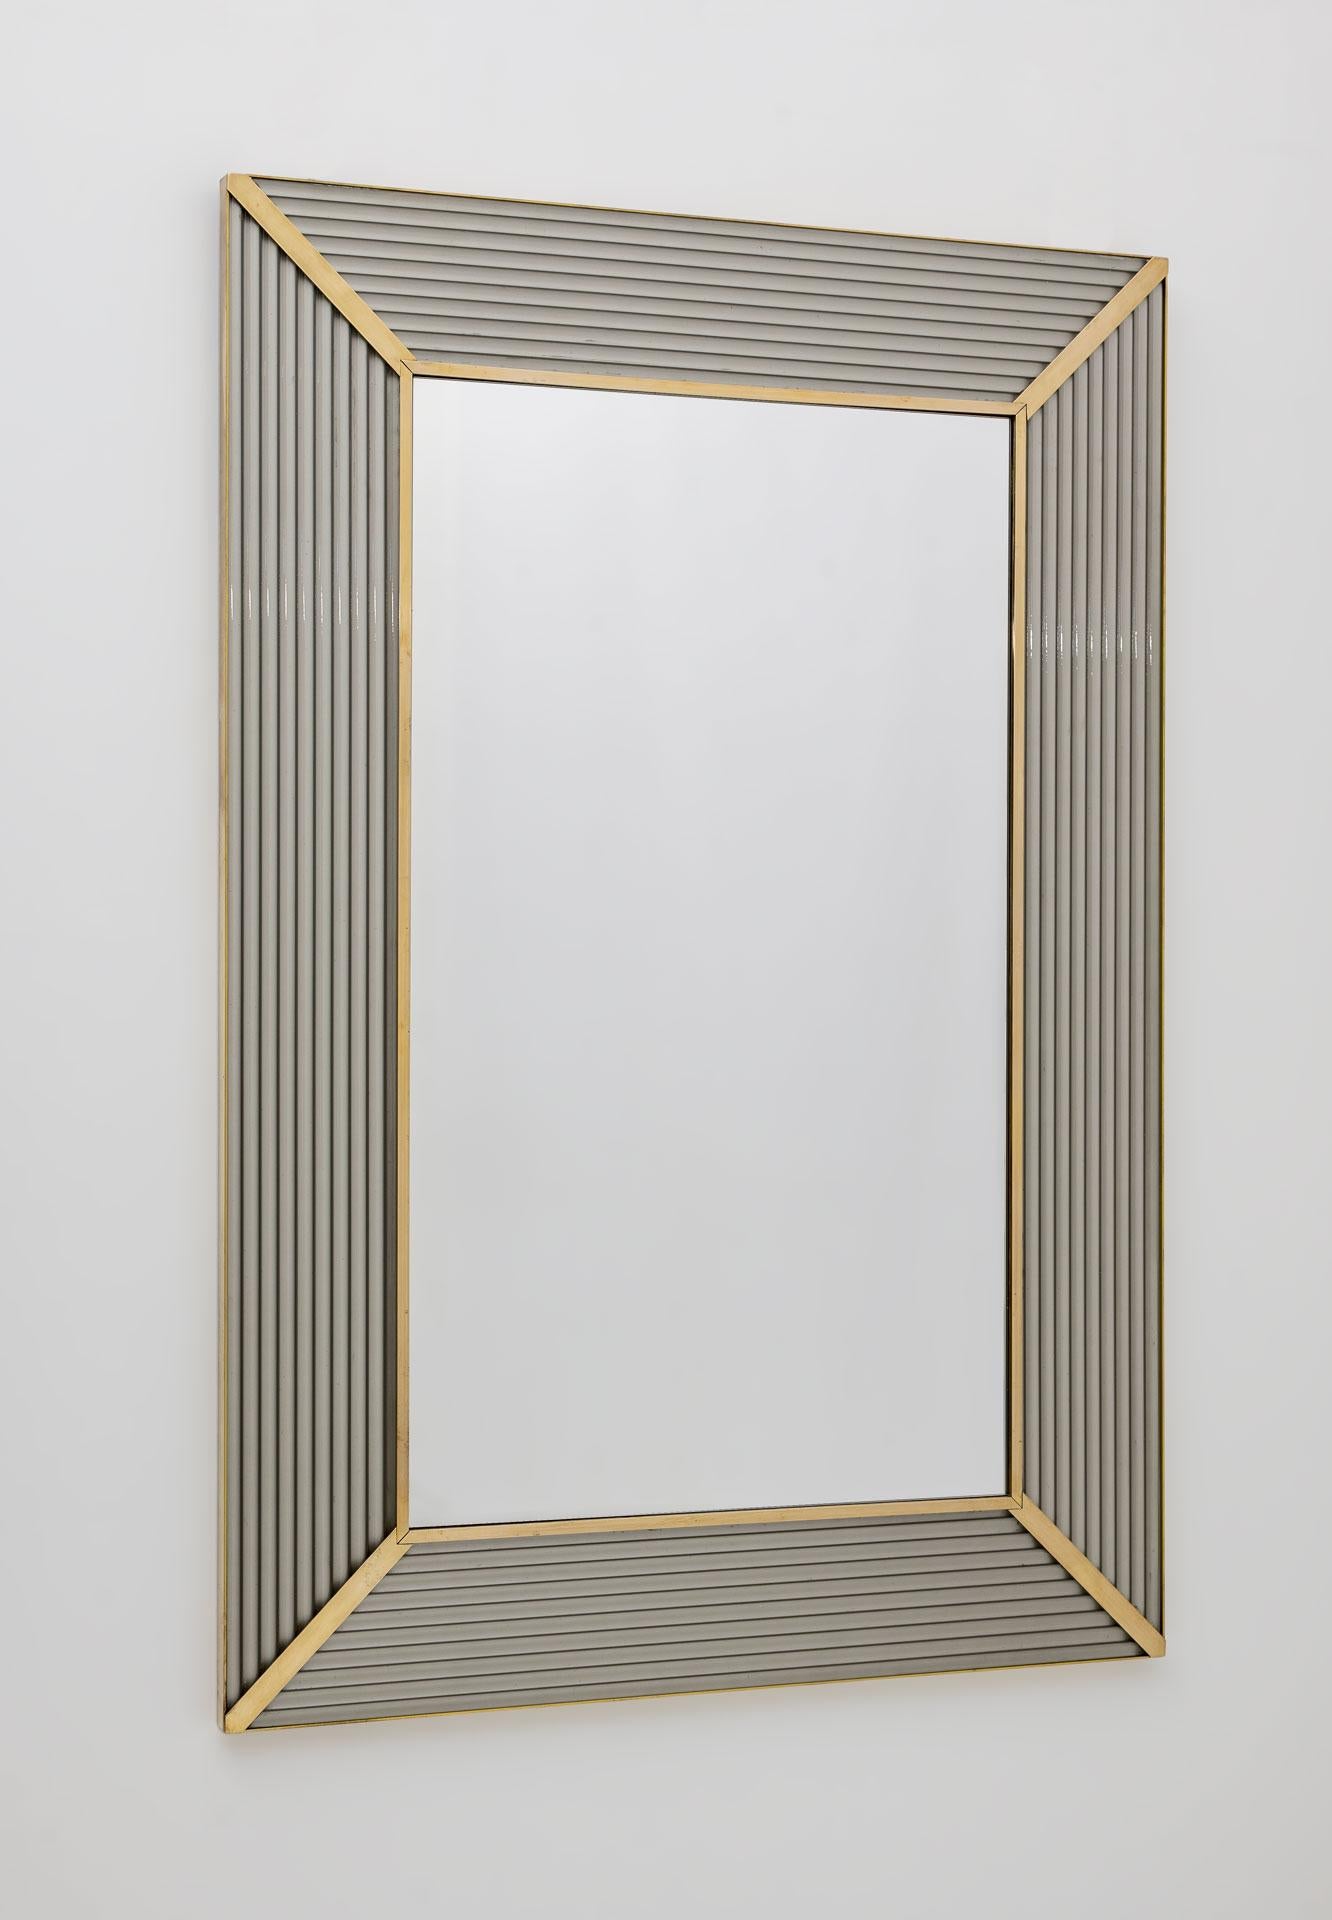 Spiegel mit grauem Murano-Glasrahmen, mit Messingleiste, die Spiegelstruktur ist aus Holz.
Der Spiegel kann sowohl senkrecht als auch waagerecht aufgehängt werden